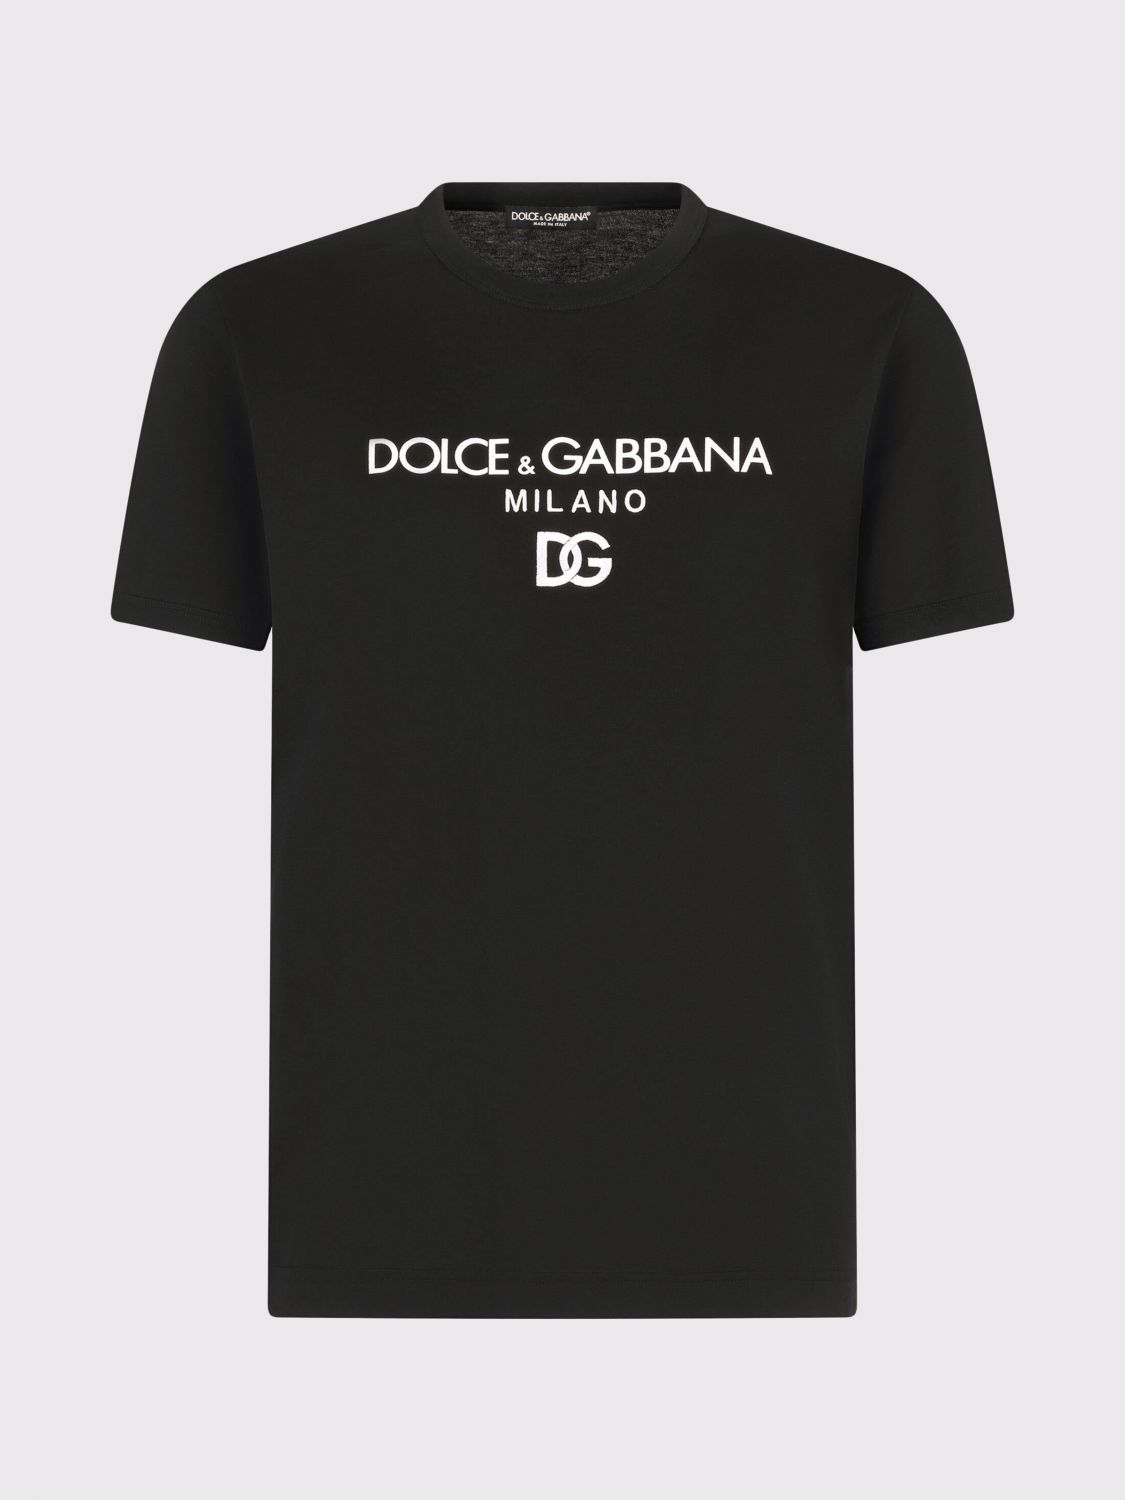 DOLCE & GABBANA: logo T-shirt - Black | Dolce & Gabbana t-shirt ...